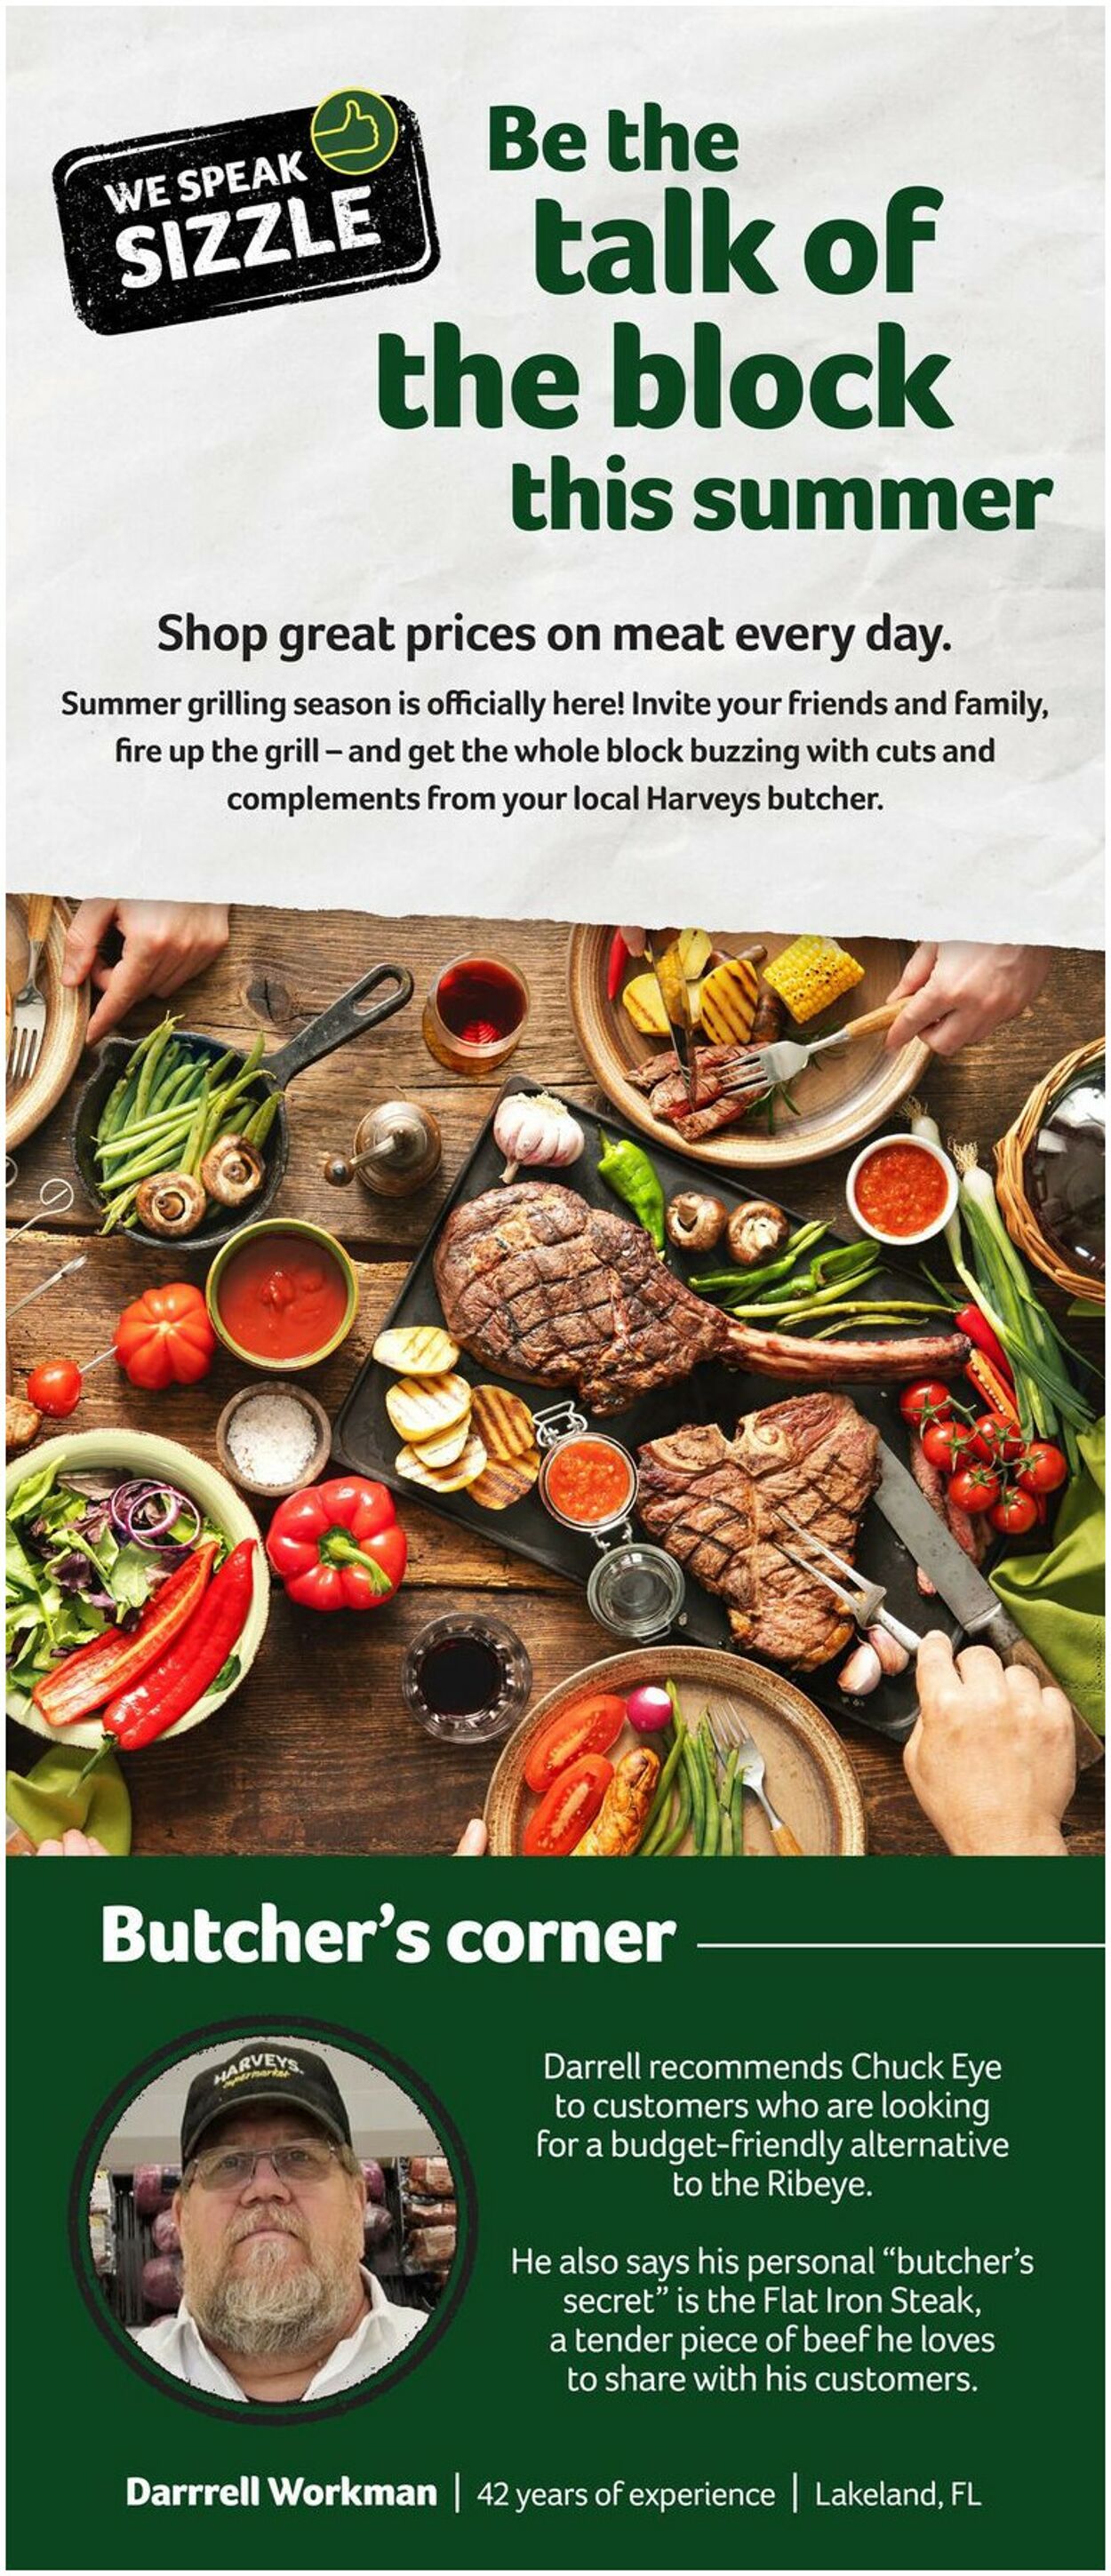 Catalogue Harveys Supermarket from 07/10/2024